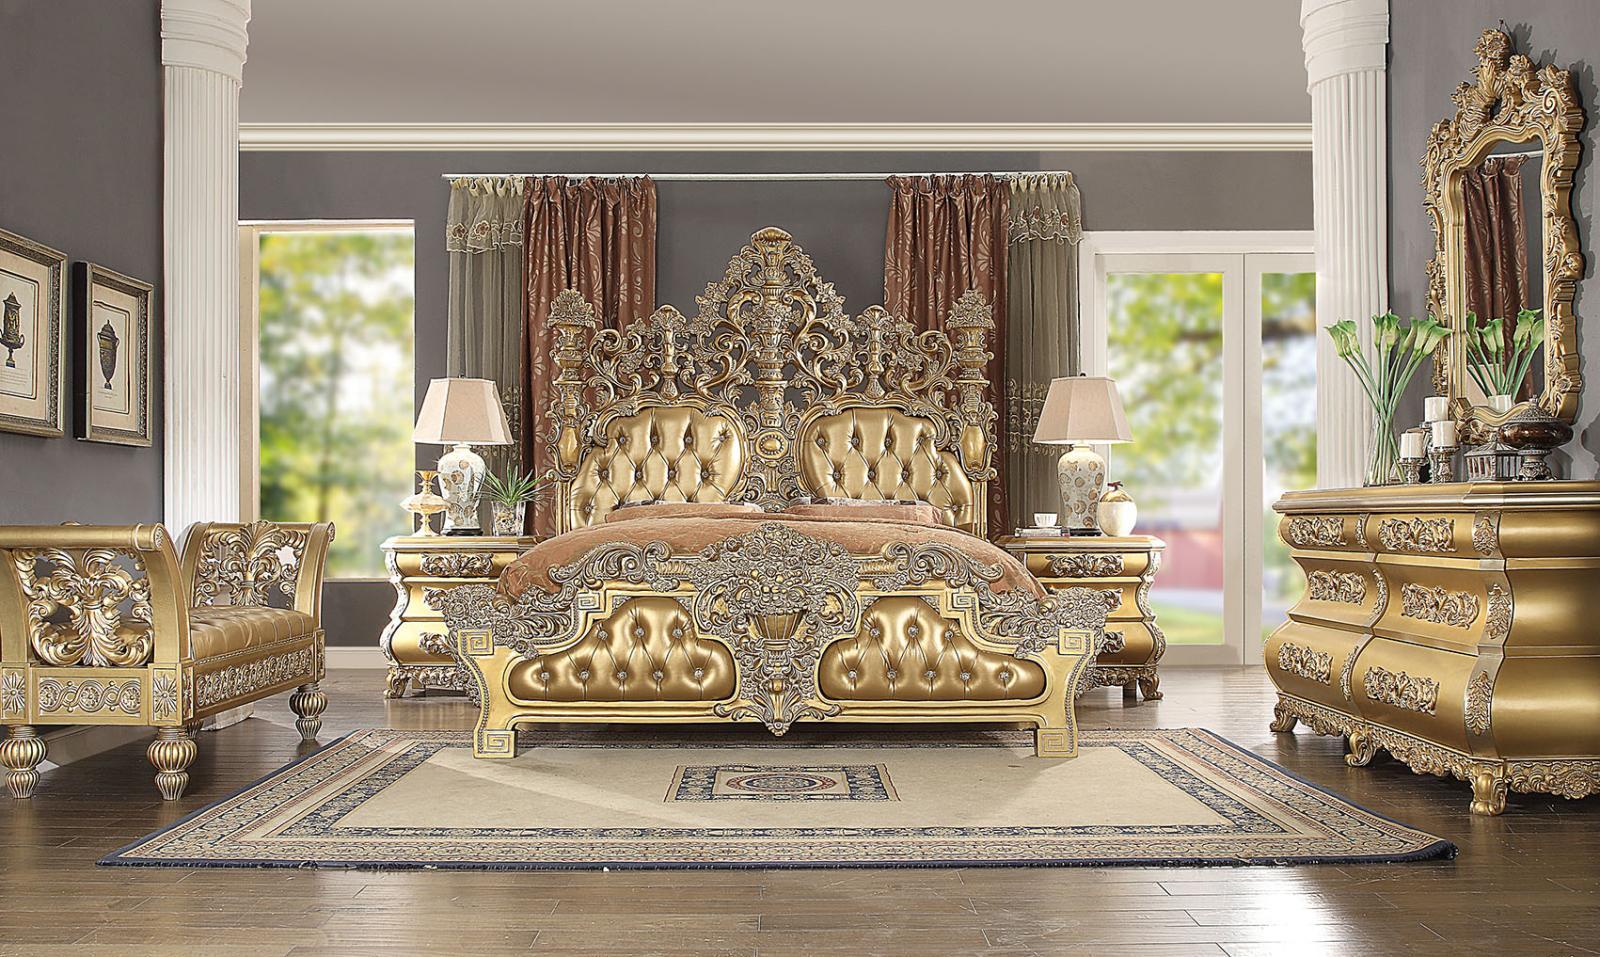 Traditional Panel Bedroom Set HD-8016 – EK BED SET HD-8016-BSET5-EK in Rich Gold, Gold Finish Leather